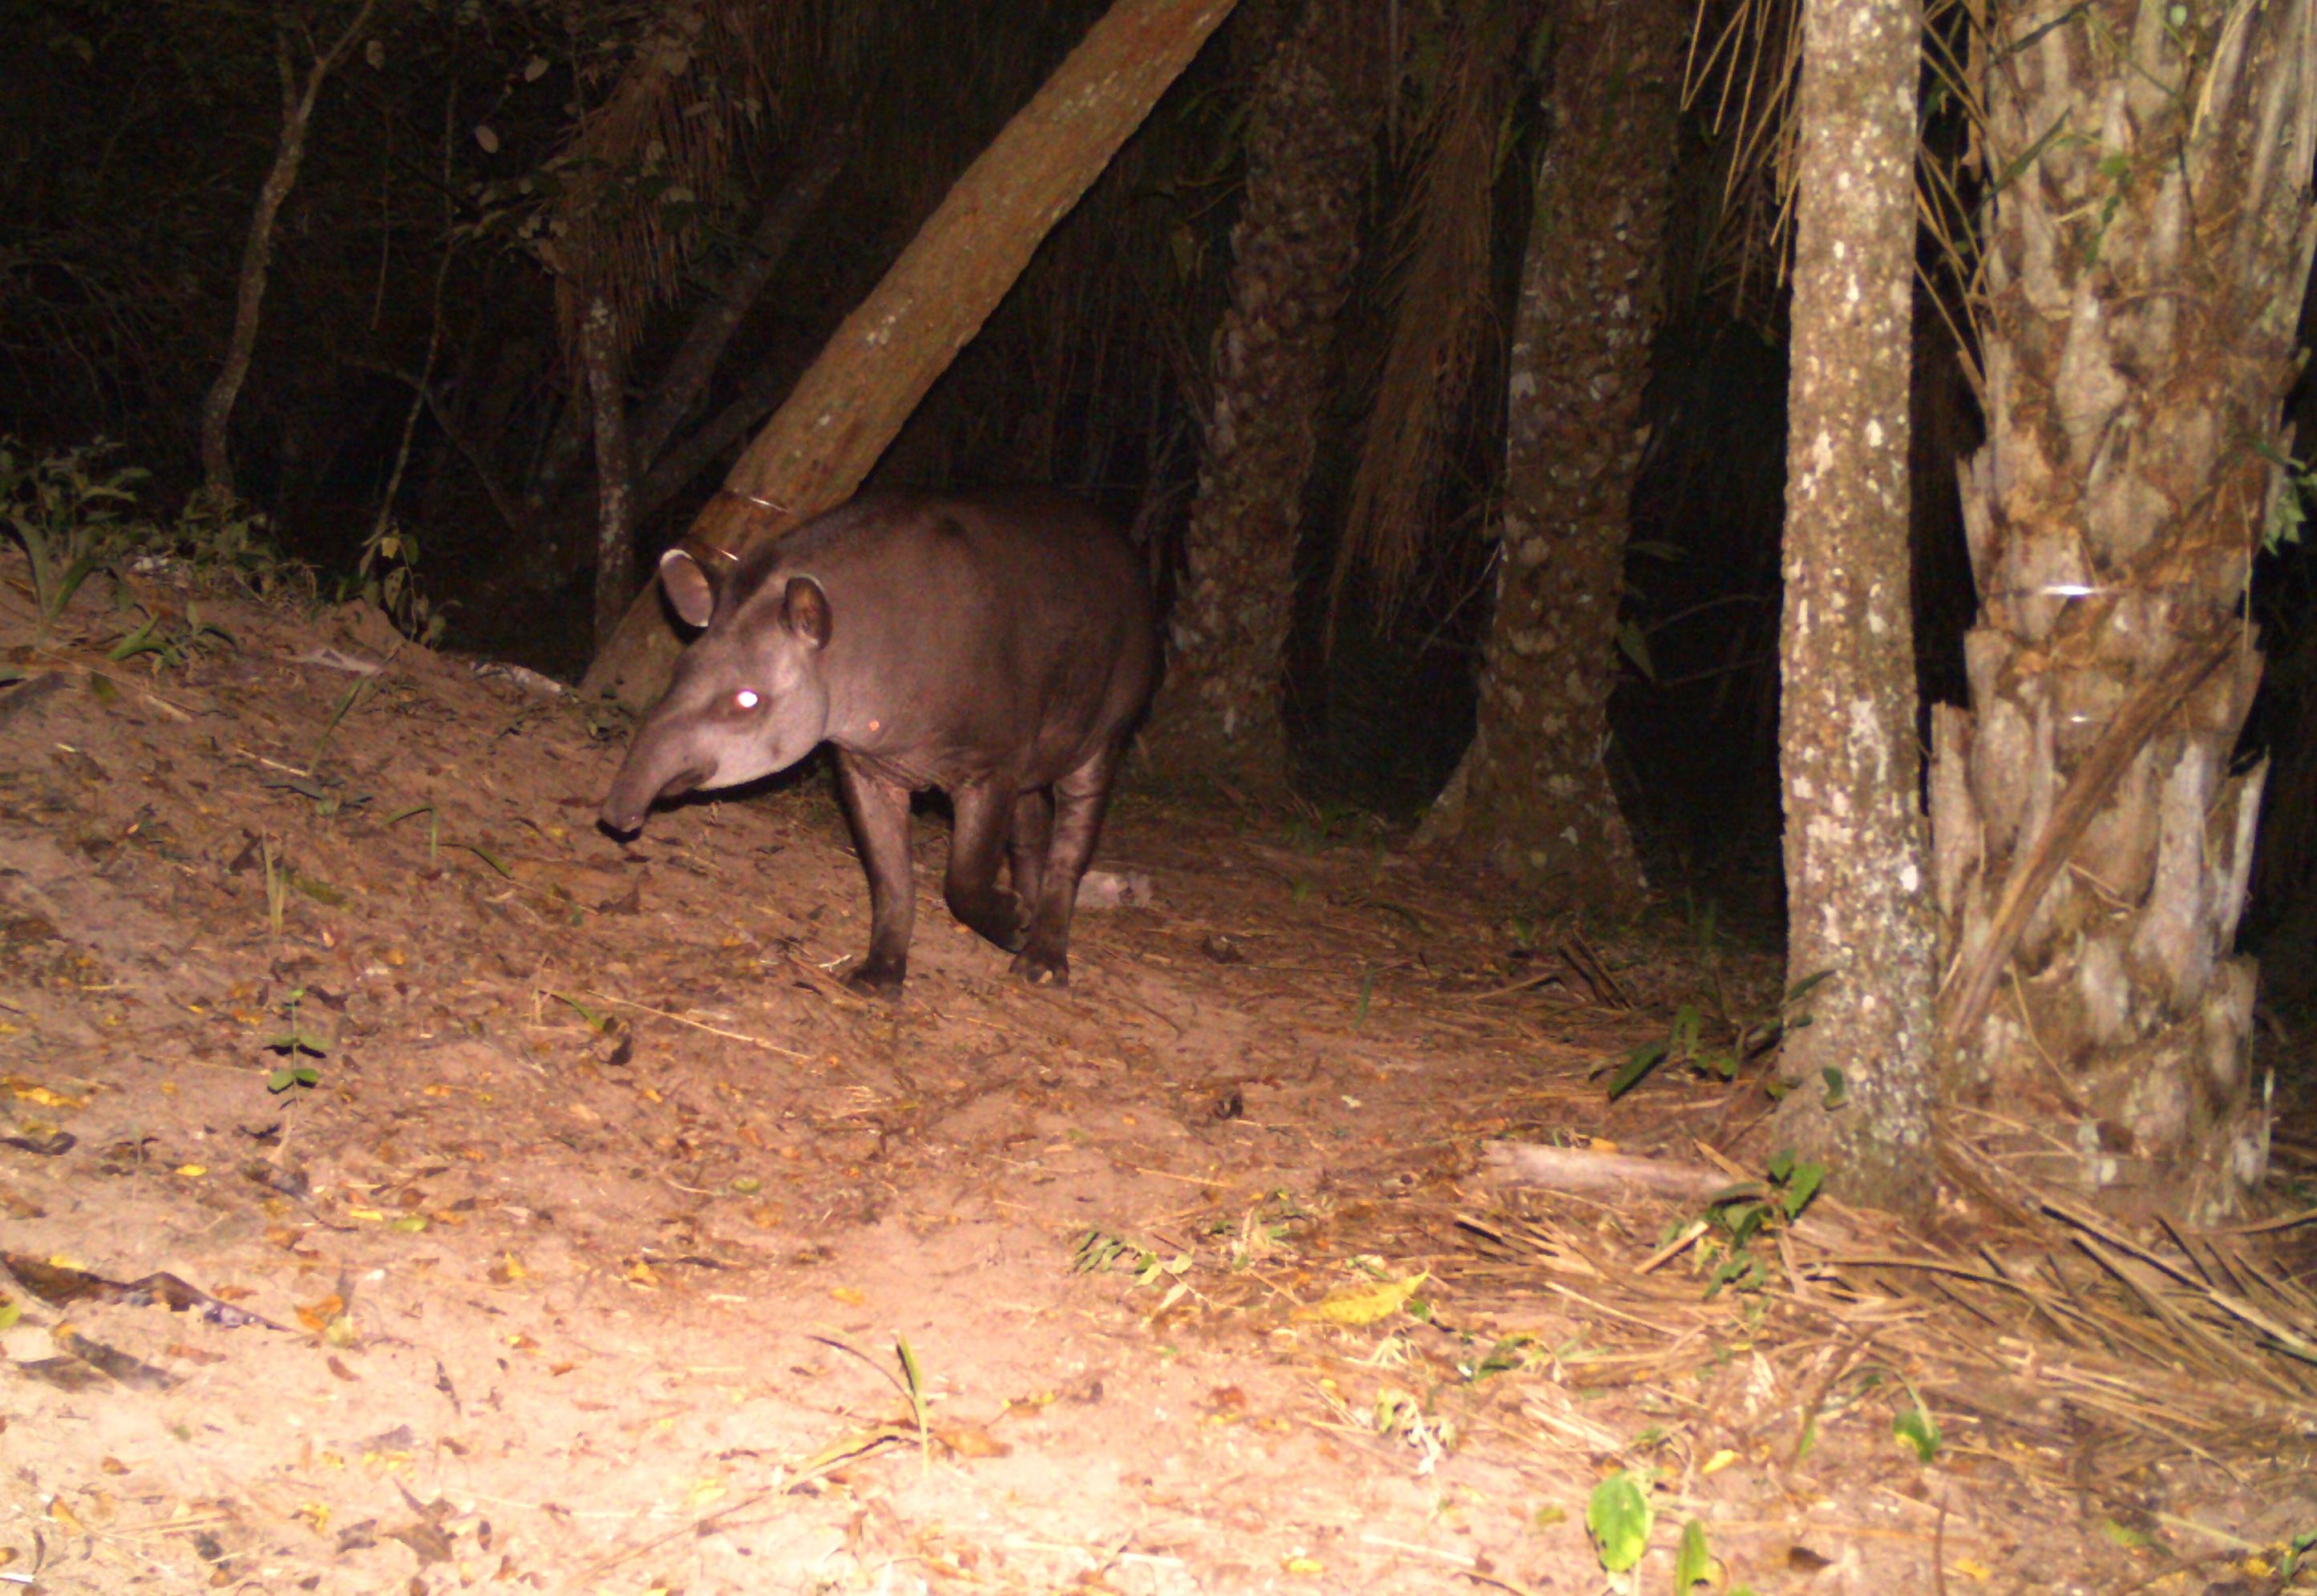 Ein Tapir mit langer Nase wie ein Rüssel und kurzem Schwarz-grauen Fell tritt aus einem dunklen Dickicht.